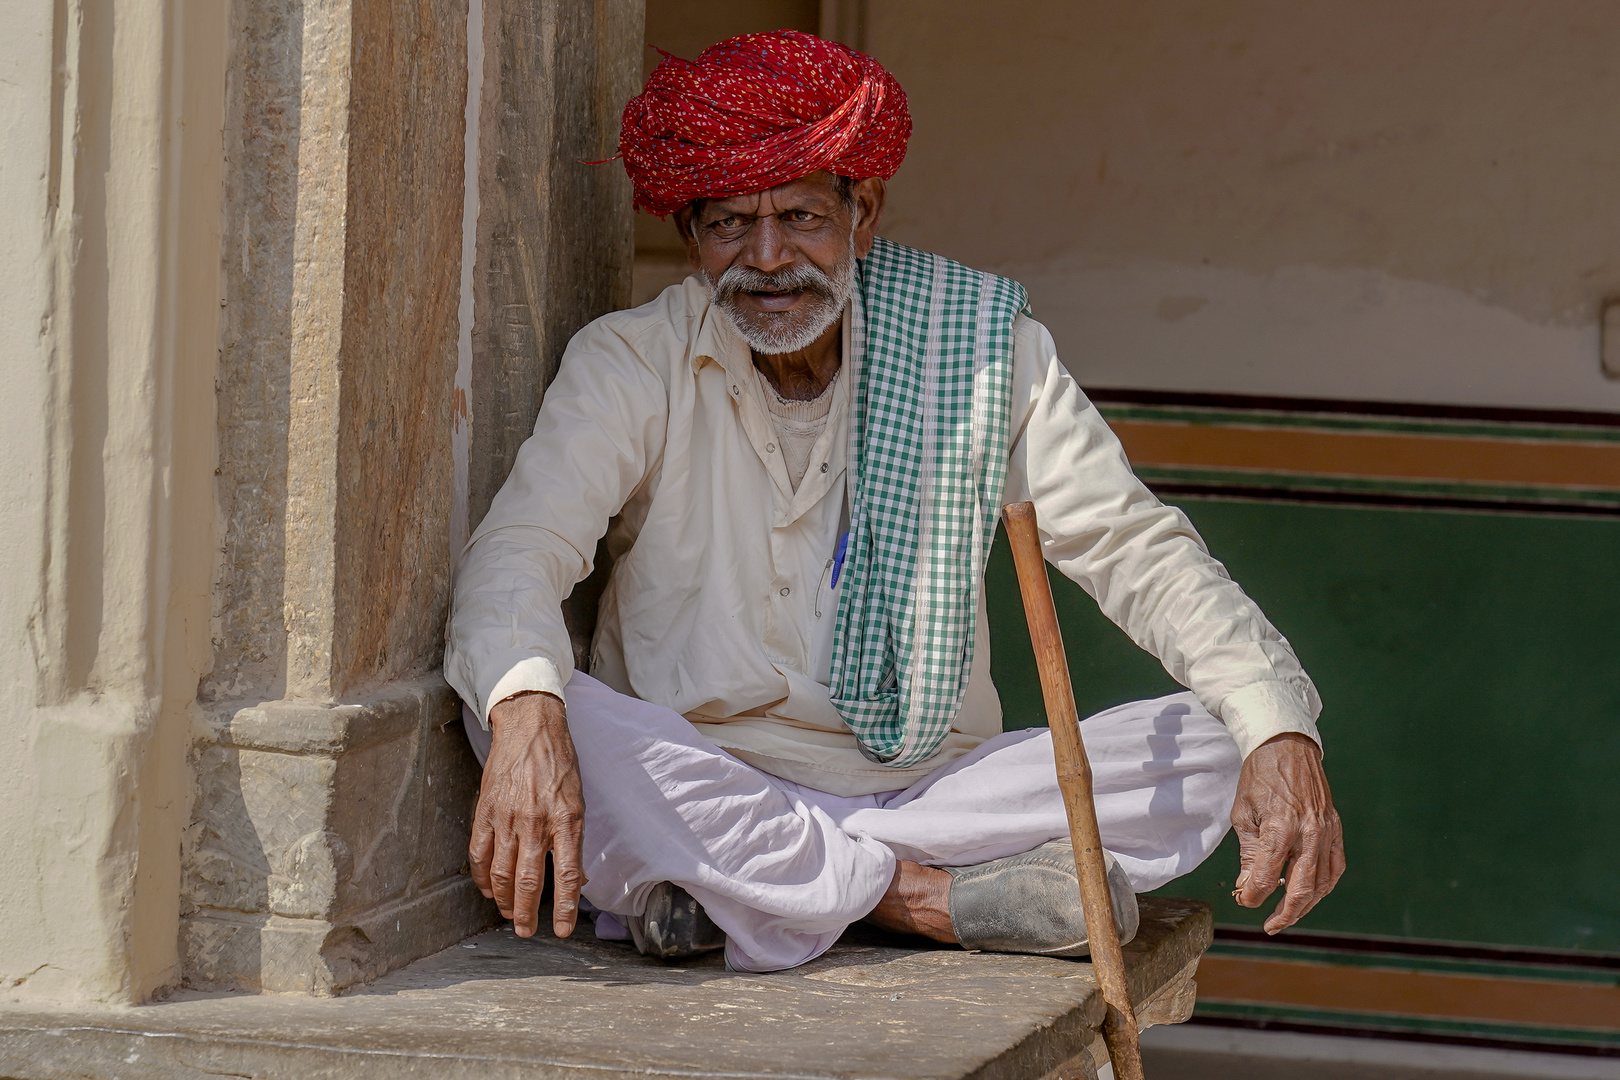 Gesichter Indiens, Jaipur, November 2018